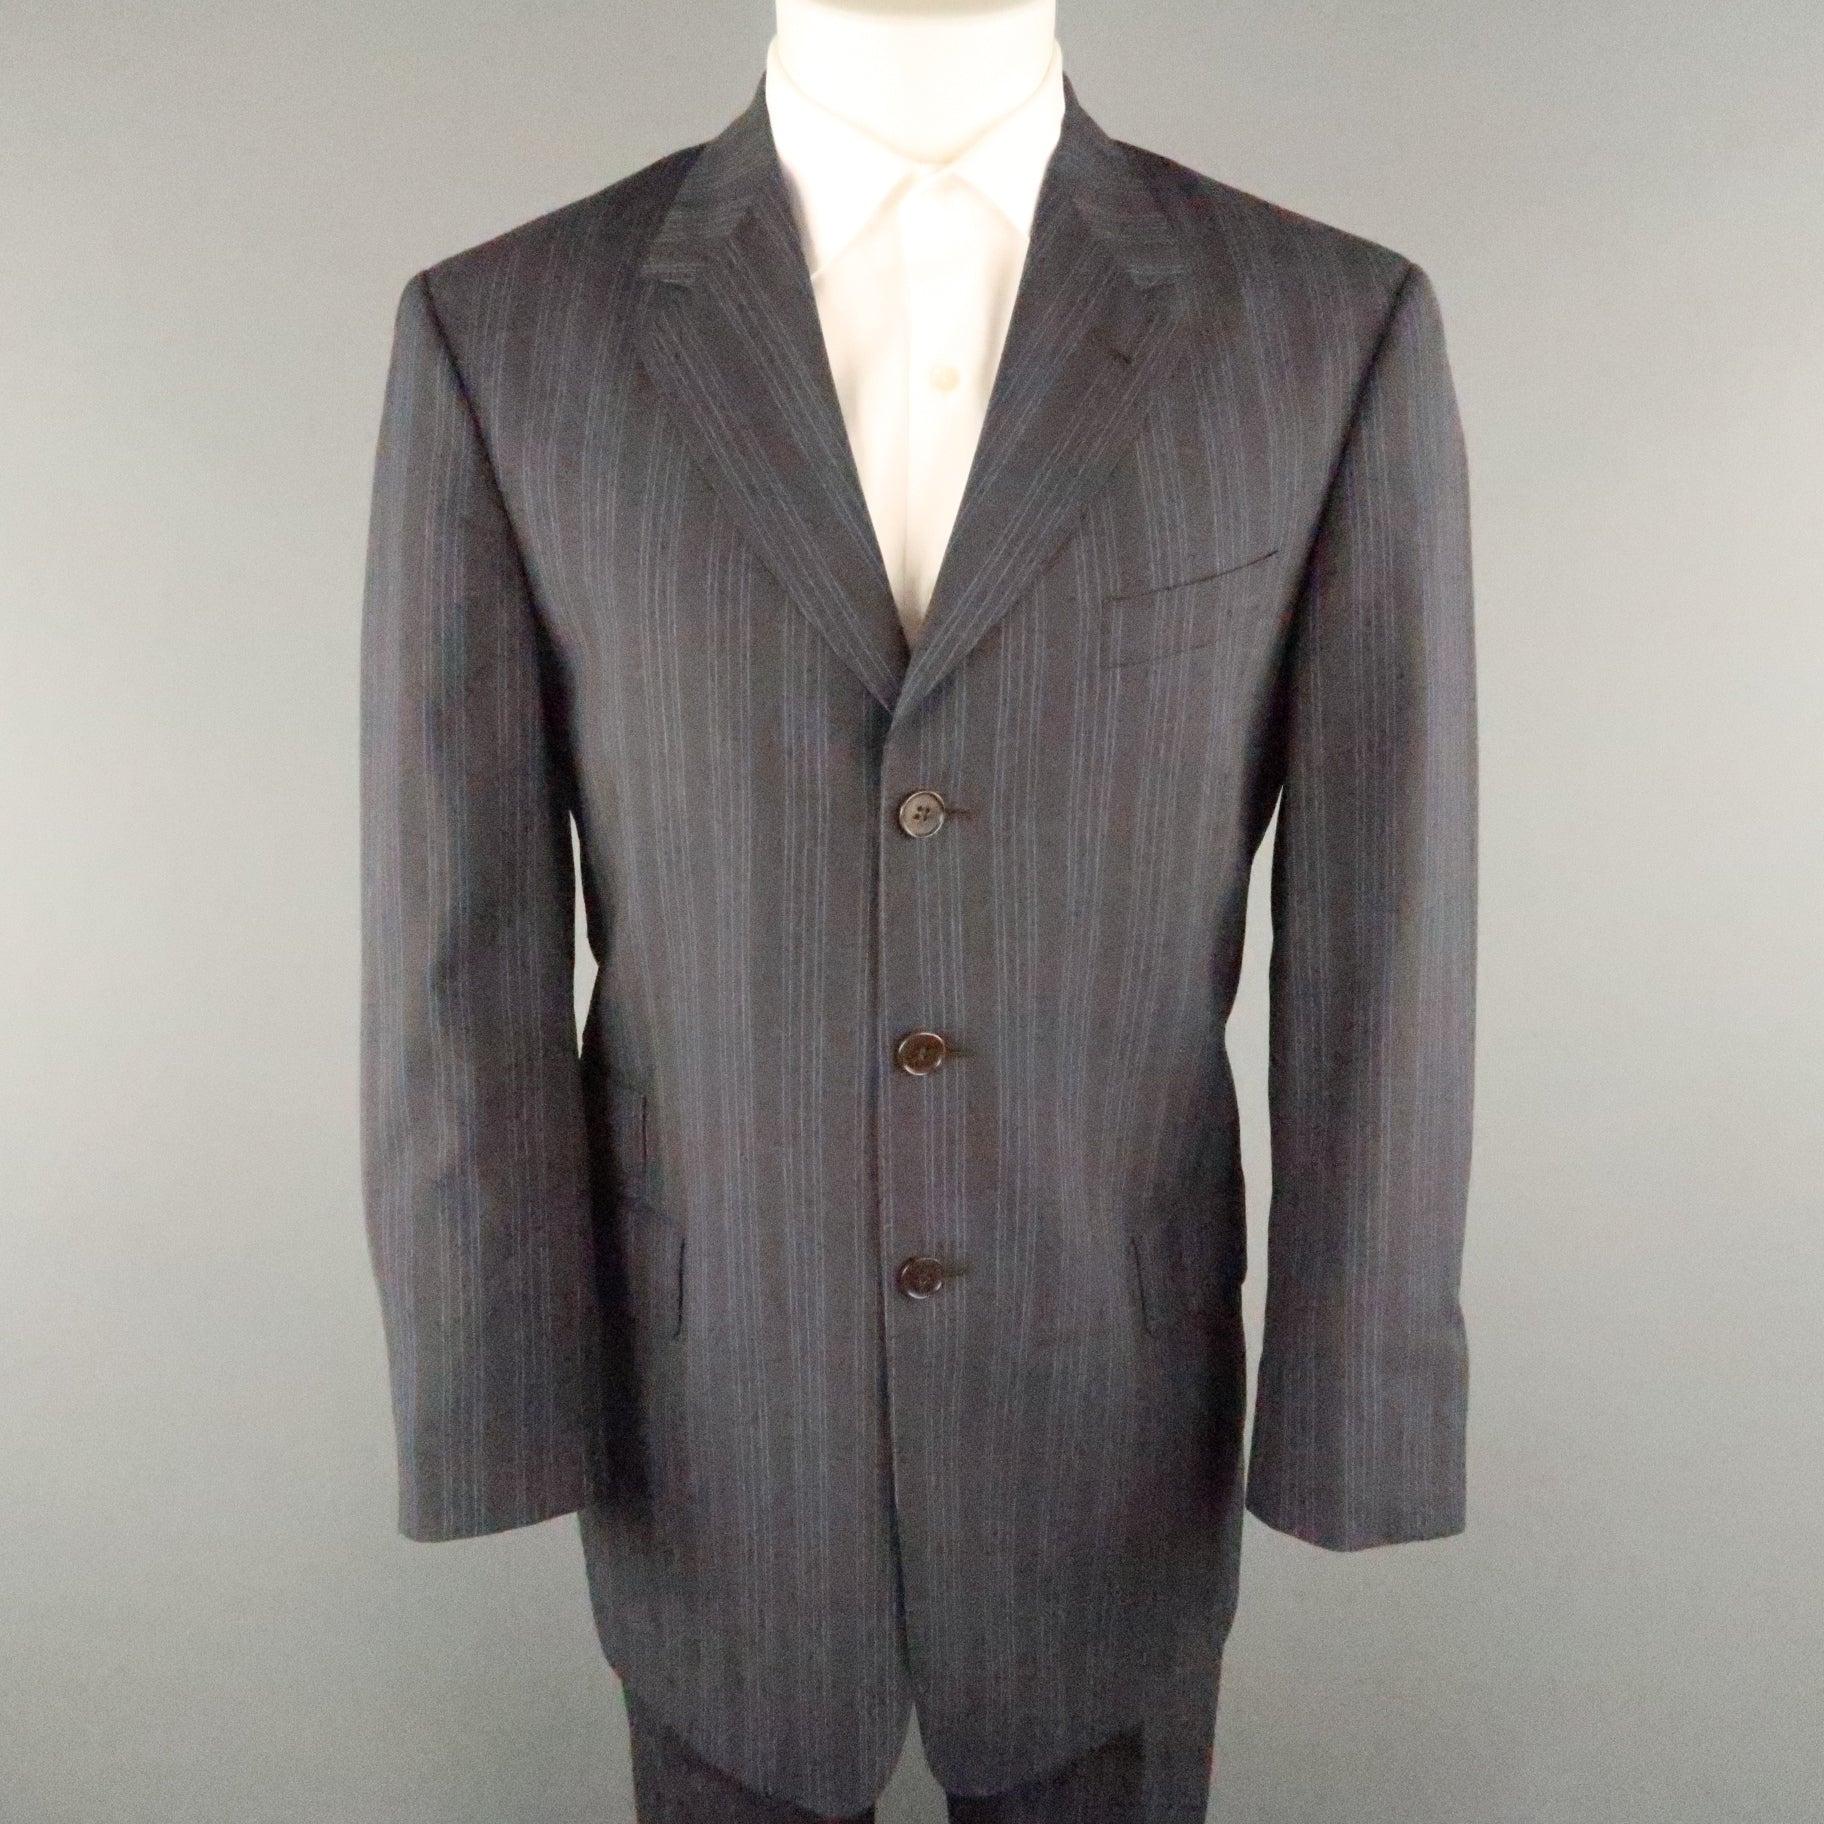 PAUL SMITH Anzug aus grau und blau gestreifter Viskose mit Einkerbung am Revers, Pattentaschen, Drei-Knopf-Verschluss und passender Hose im Flat-Front-Stil. Hergestellt in Italien. 
Ausgezeichneter Pre-Owned Zustand.
 

Markiert:   40
